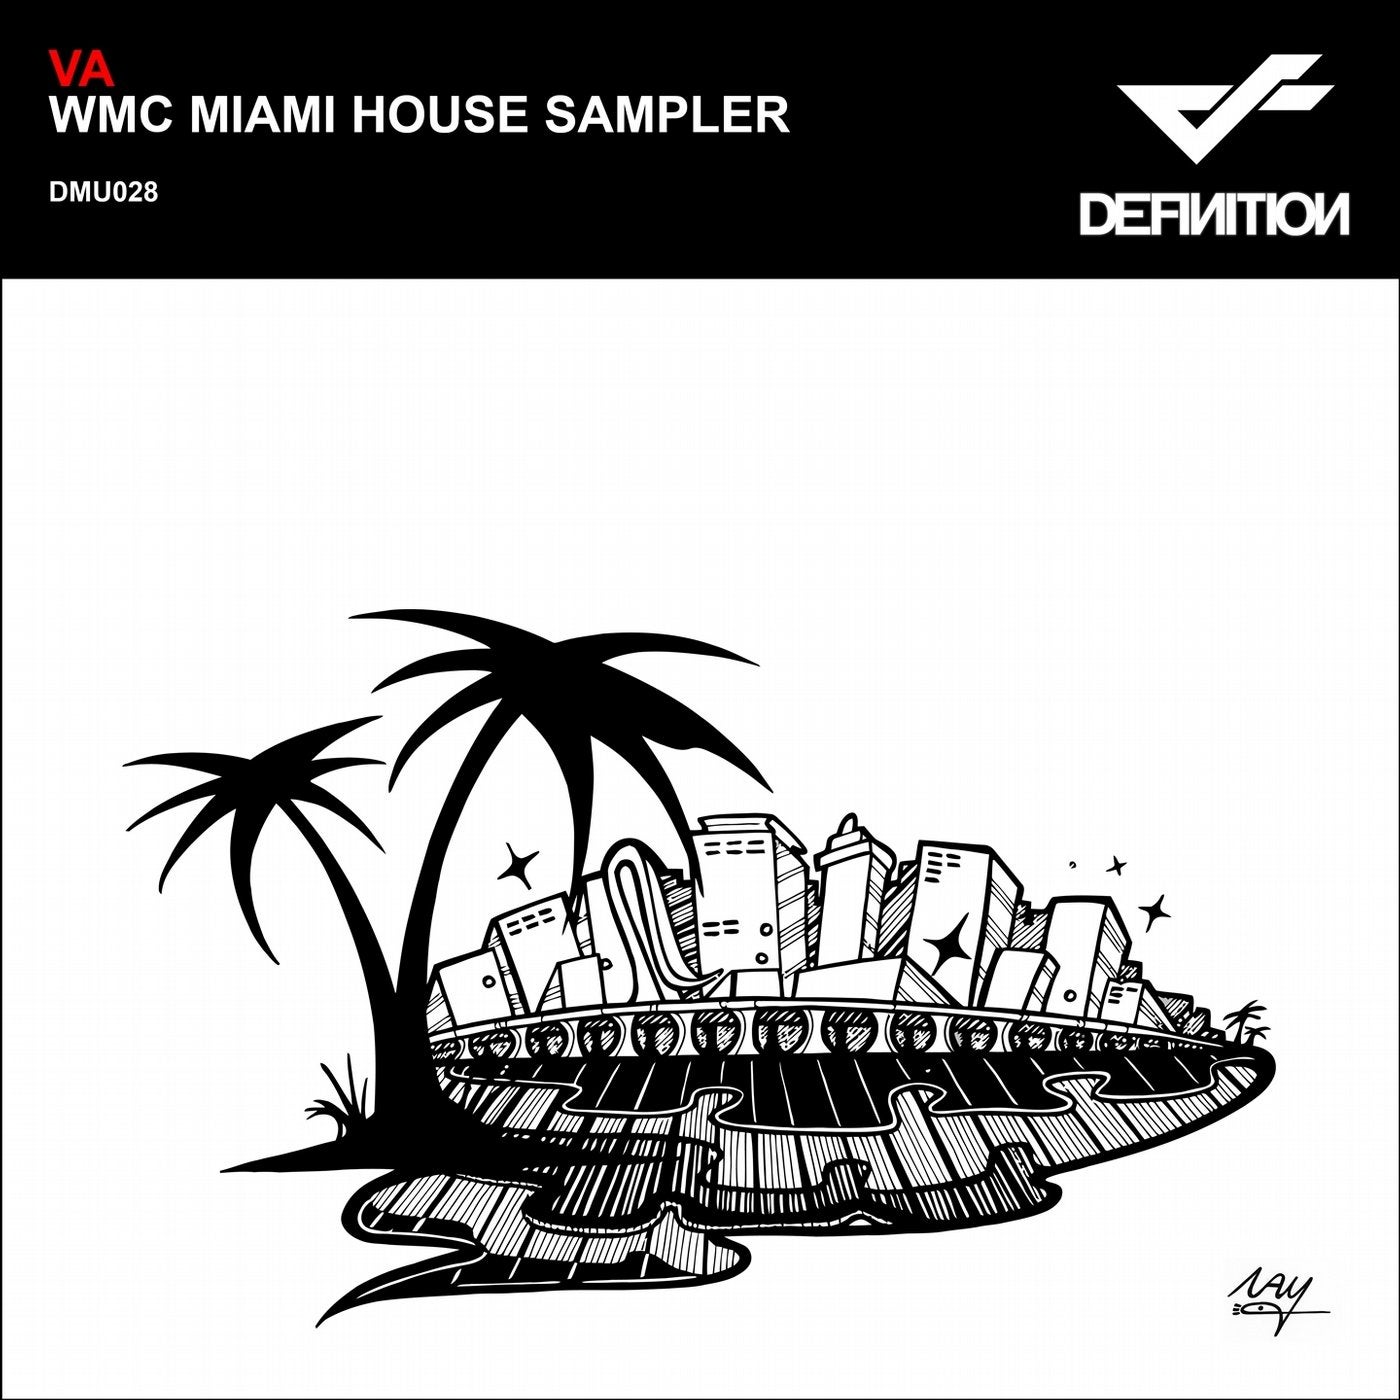 WMC Miami House Sampler